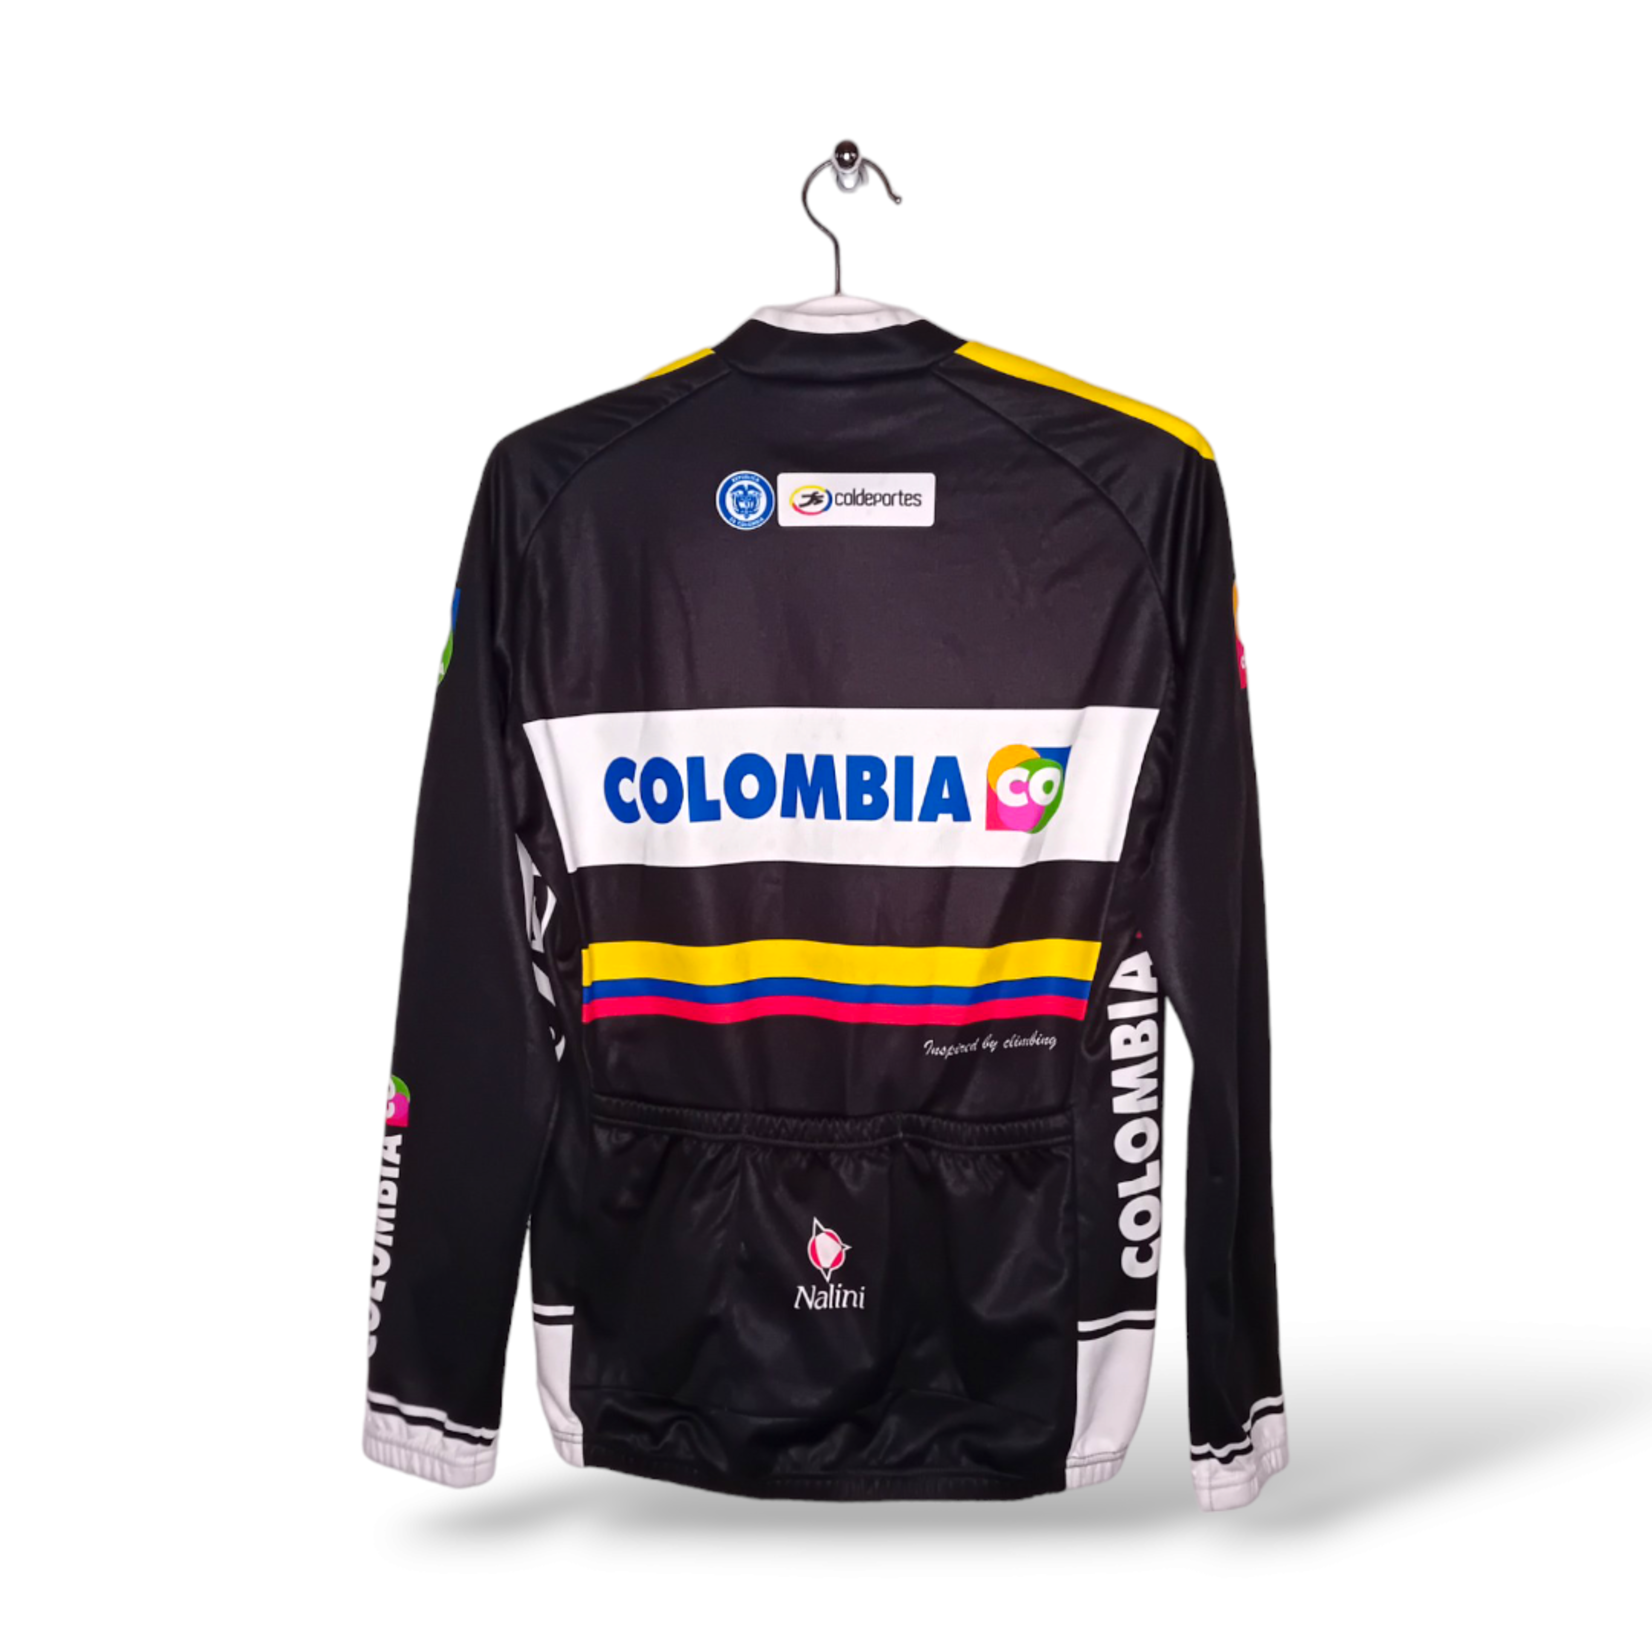 Nalini Origineel Nalini vintage wielerjacket Team Colombia 2013